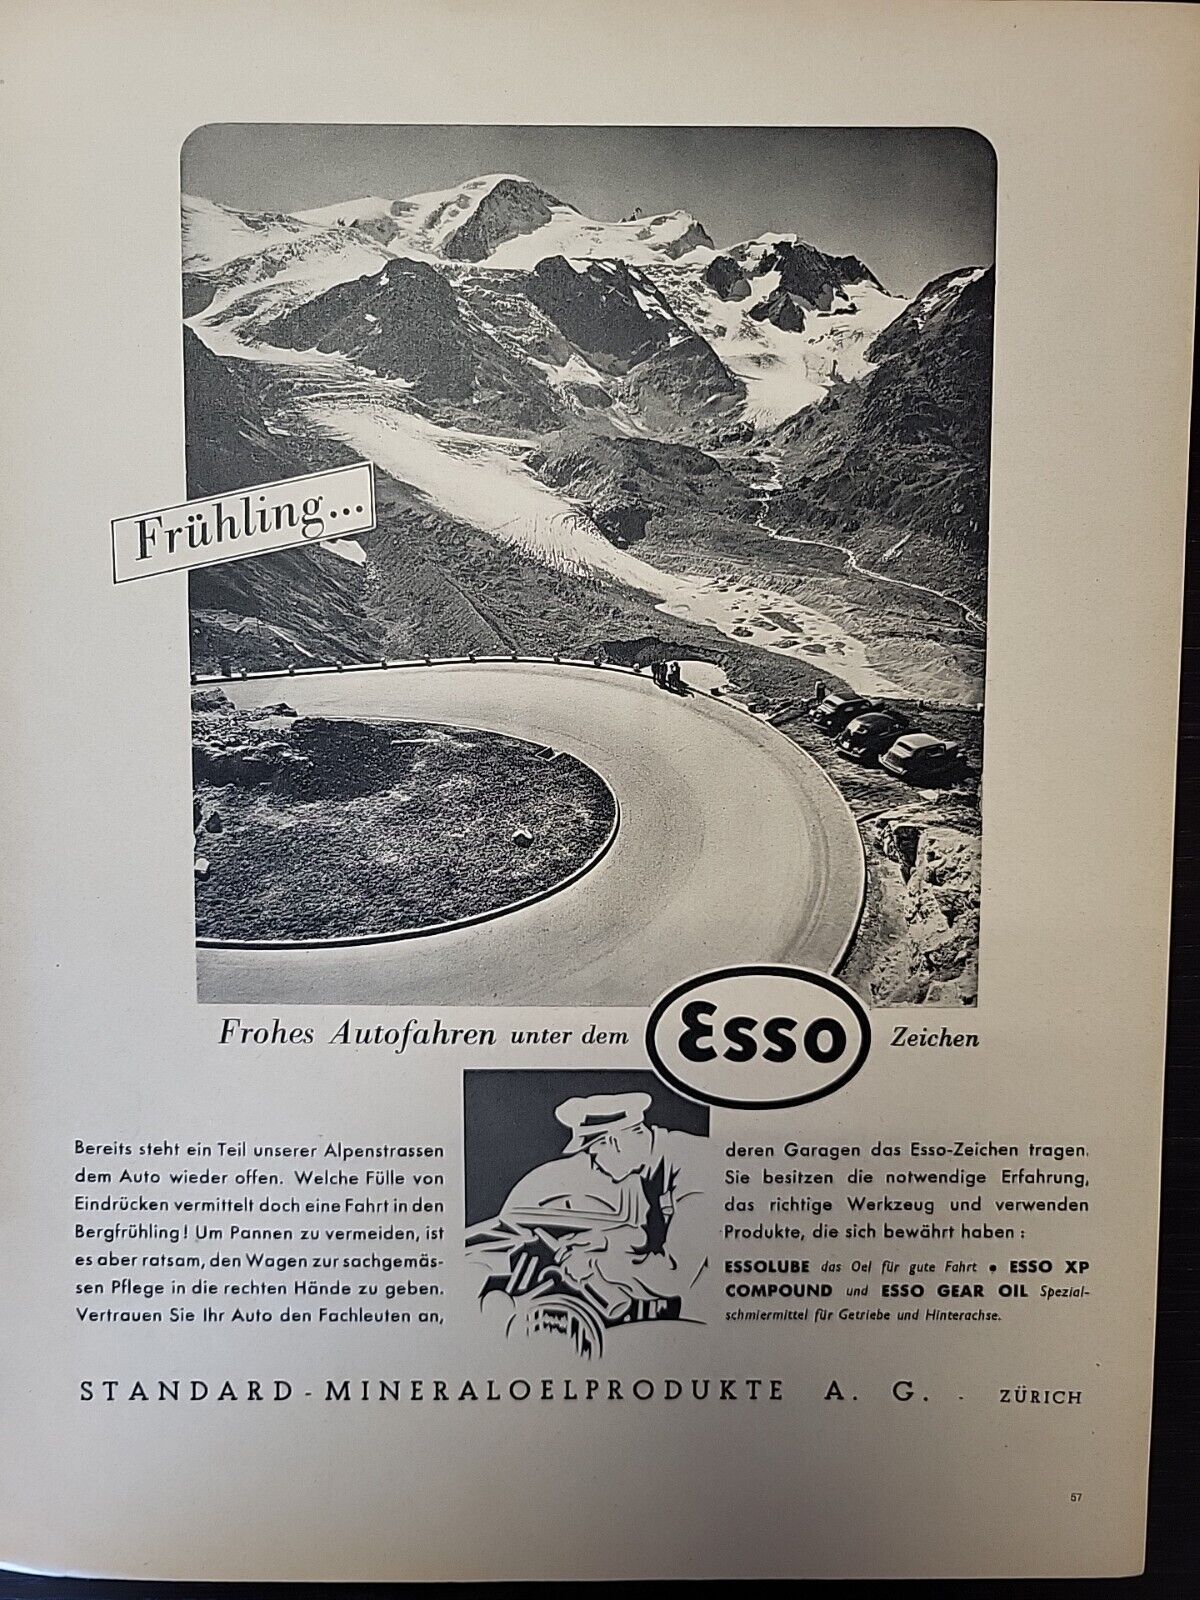 Esso Motor Oil 1947 Print Ad Du Magazine Swiss Switzerland Alps Mountains Zurich